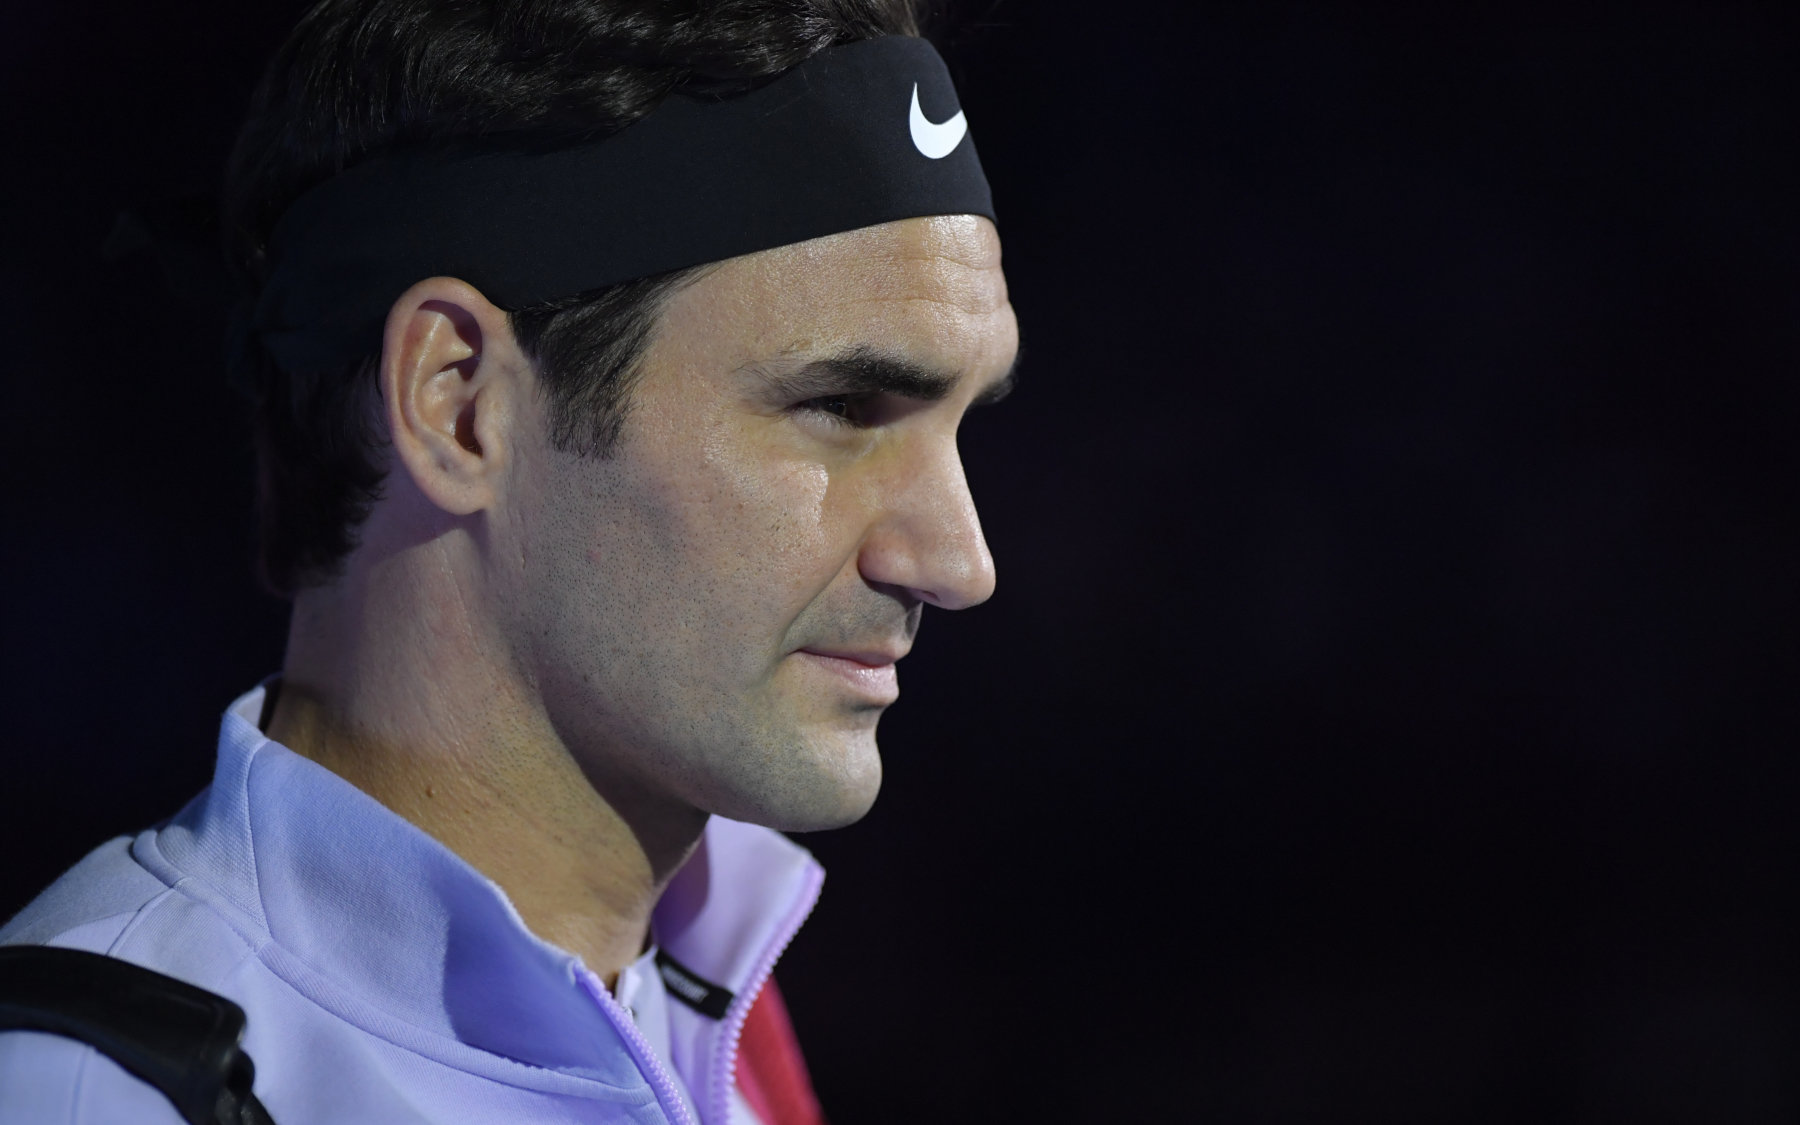 Ο Roger Federer και οι άλλοι: Οι τενίστες με τα μεγαλύτερα έσοδα τους τελευταίους 12 μήνες